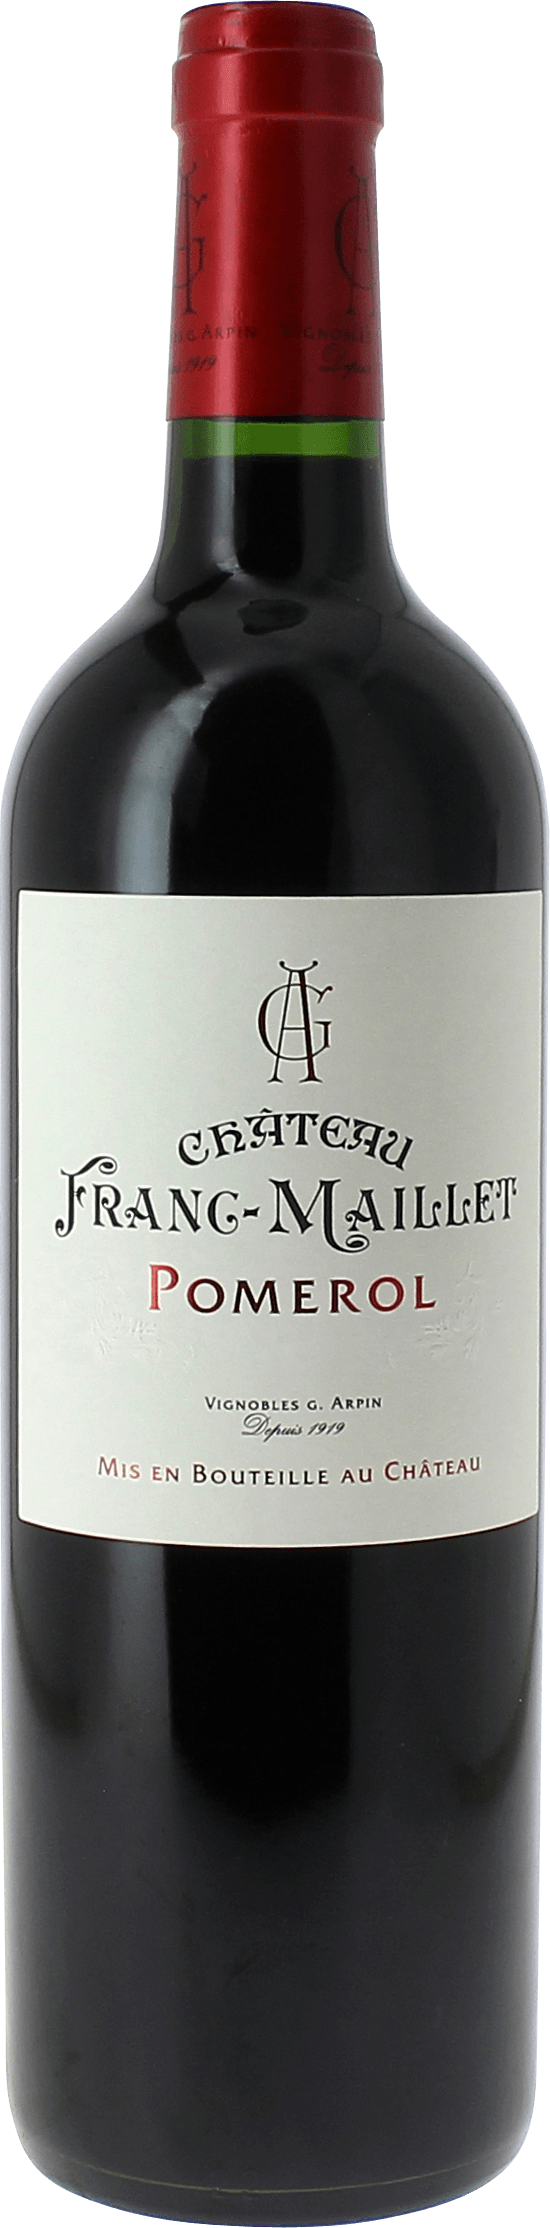 Franc maillet 2014  Pomerol, Bordeaux rouge